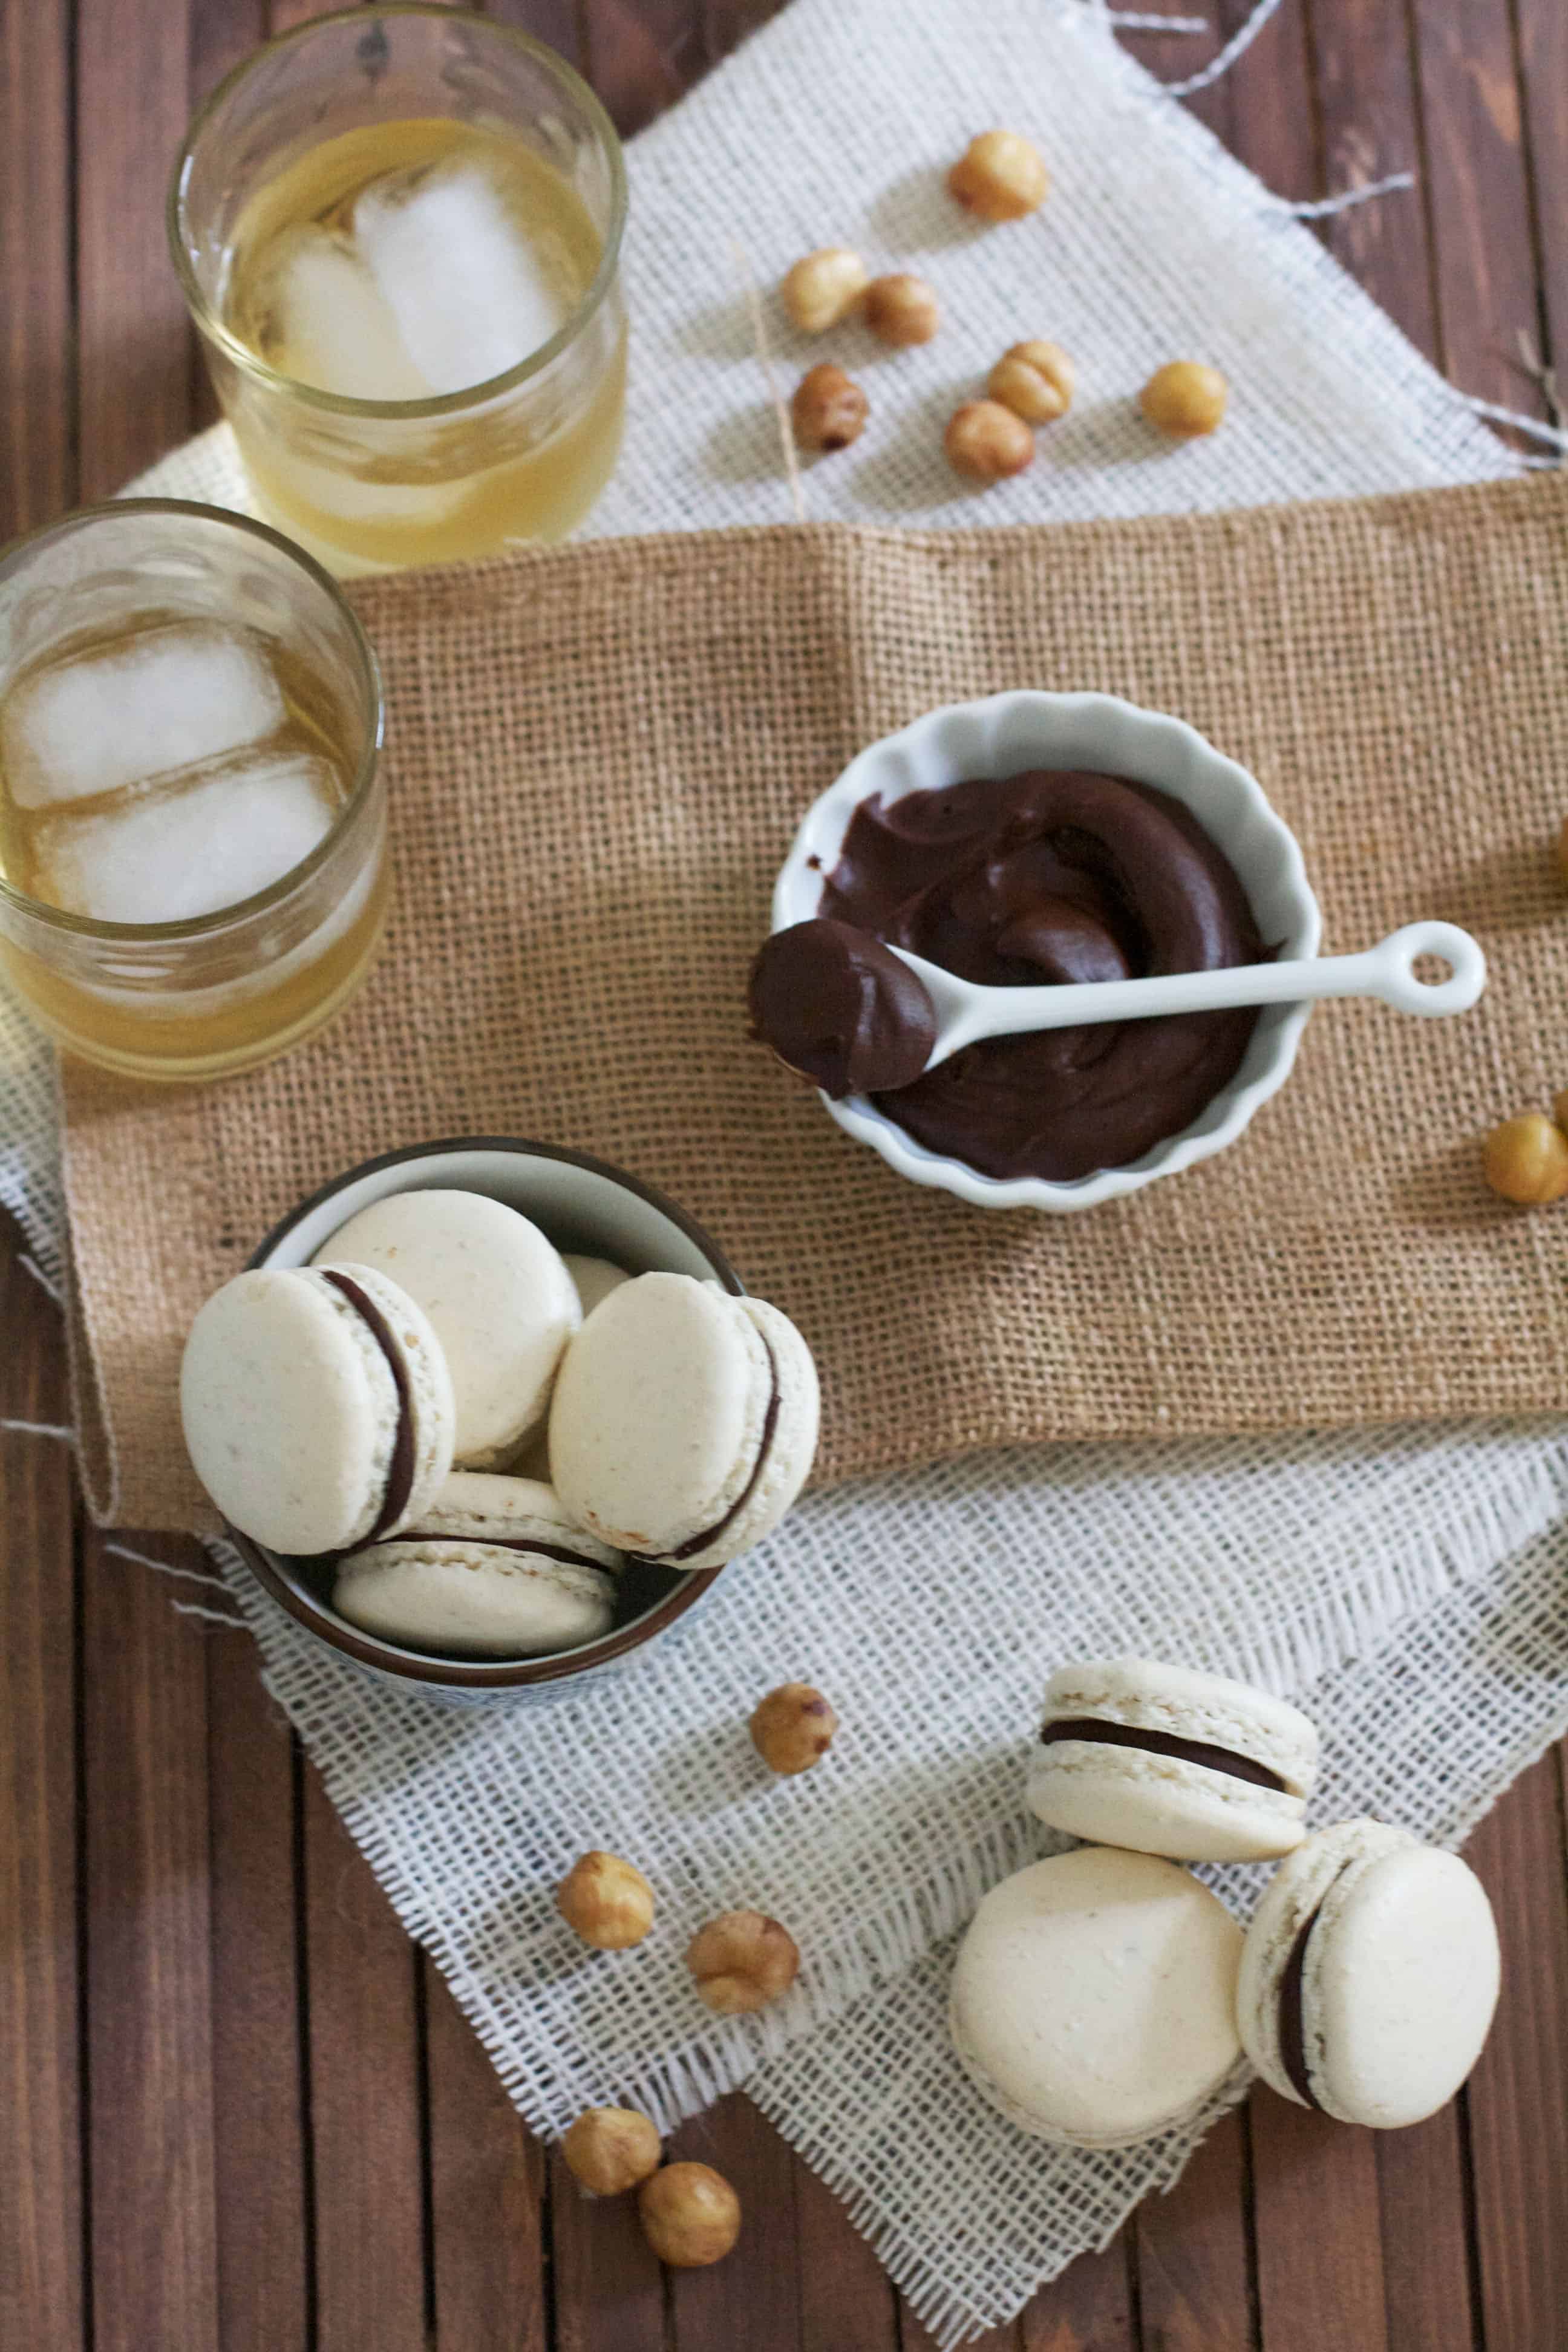 Hazelnut Macarons with Chocolate Frangelico Ganache